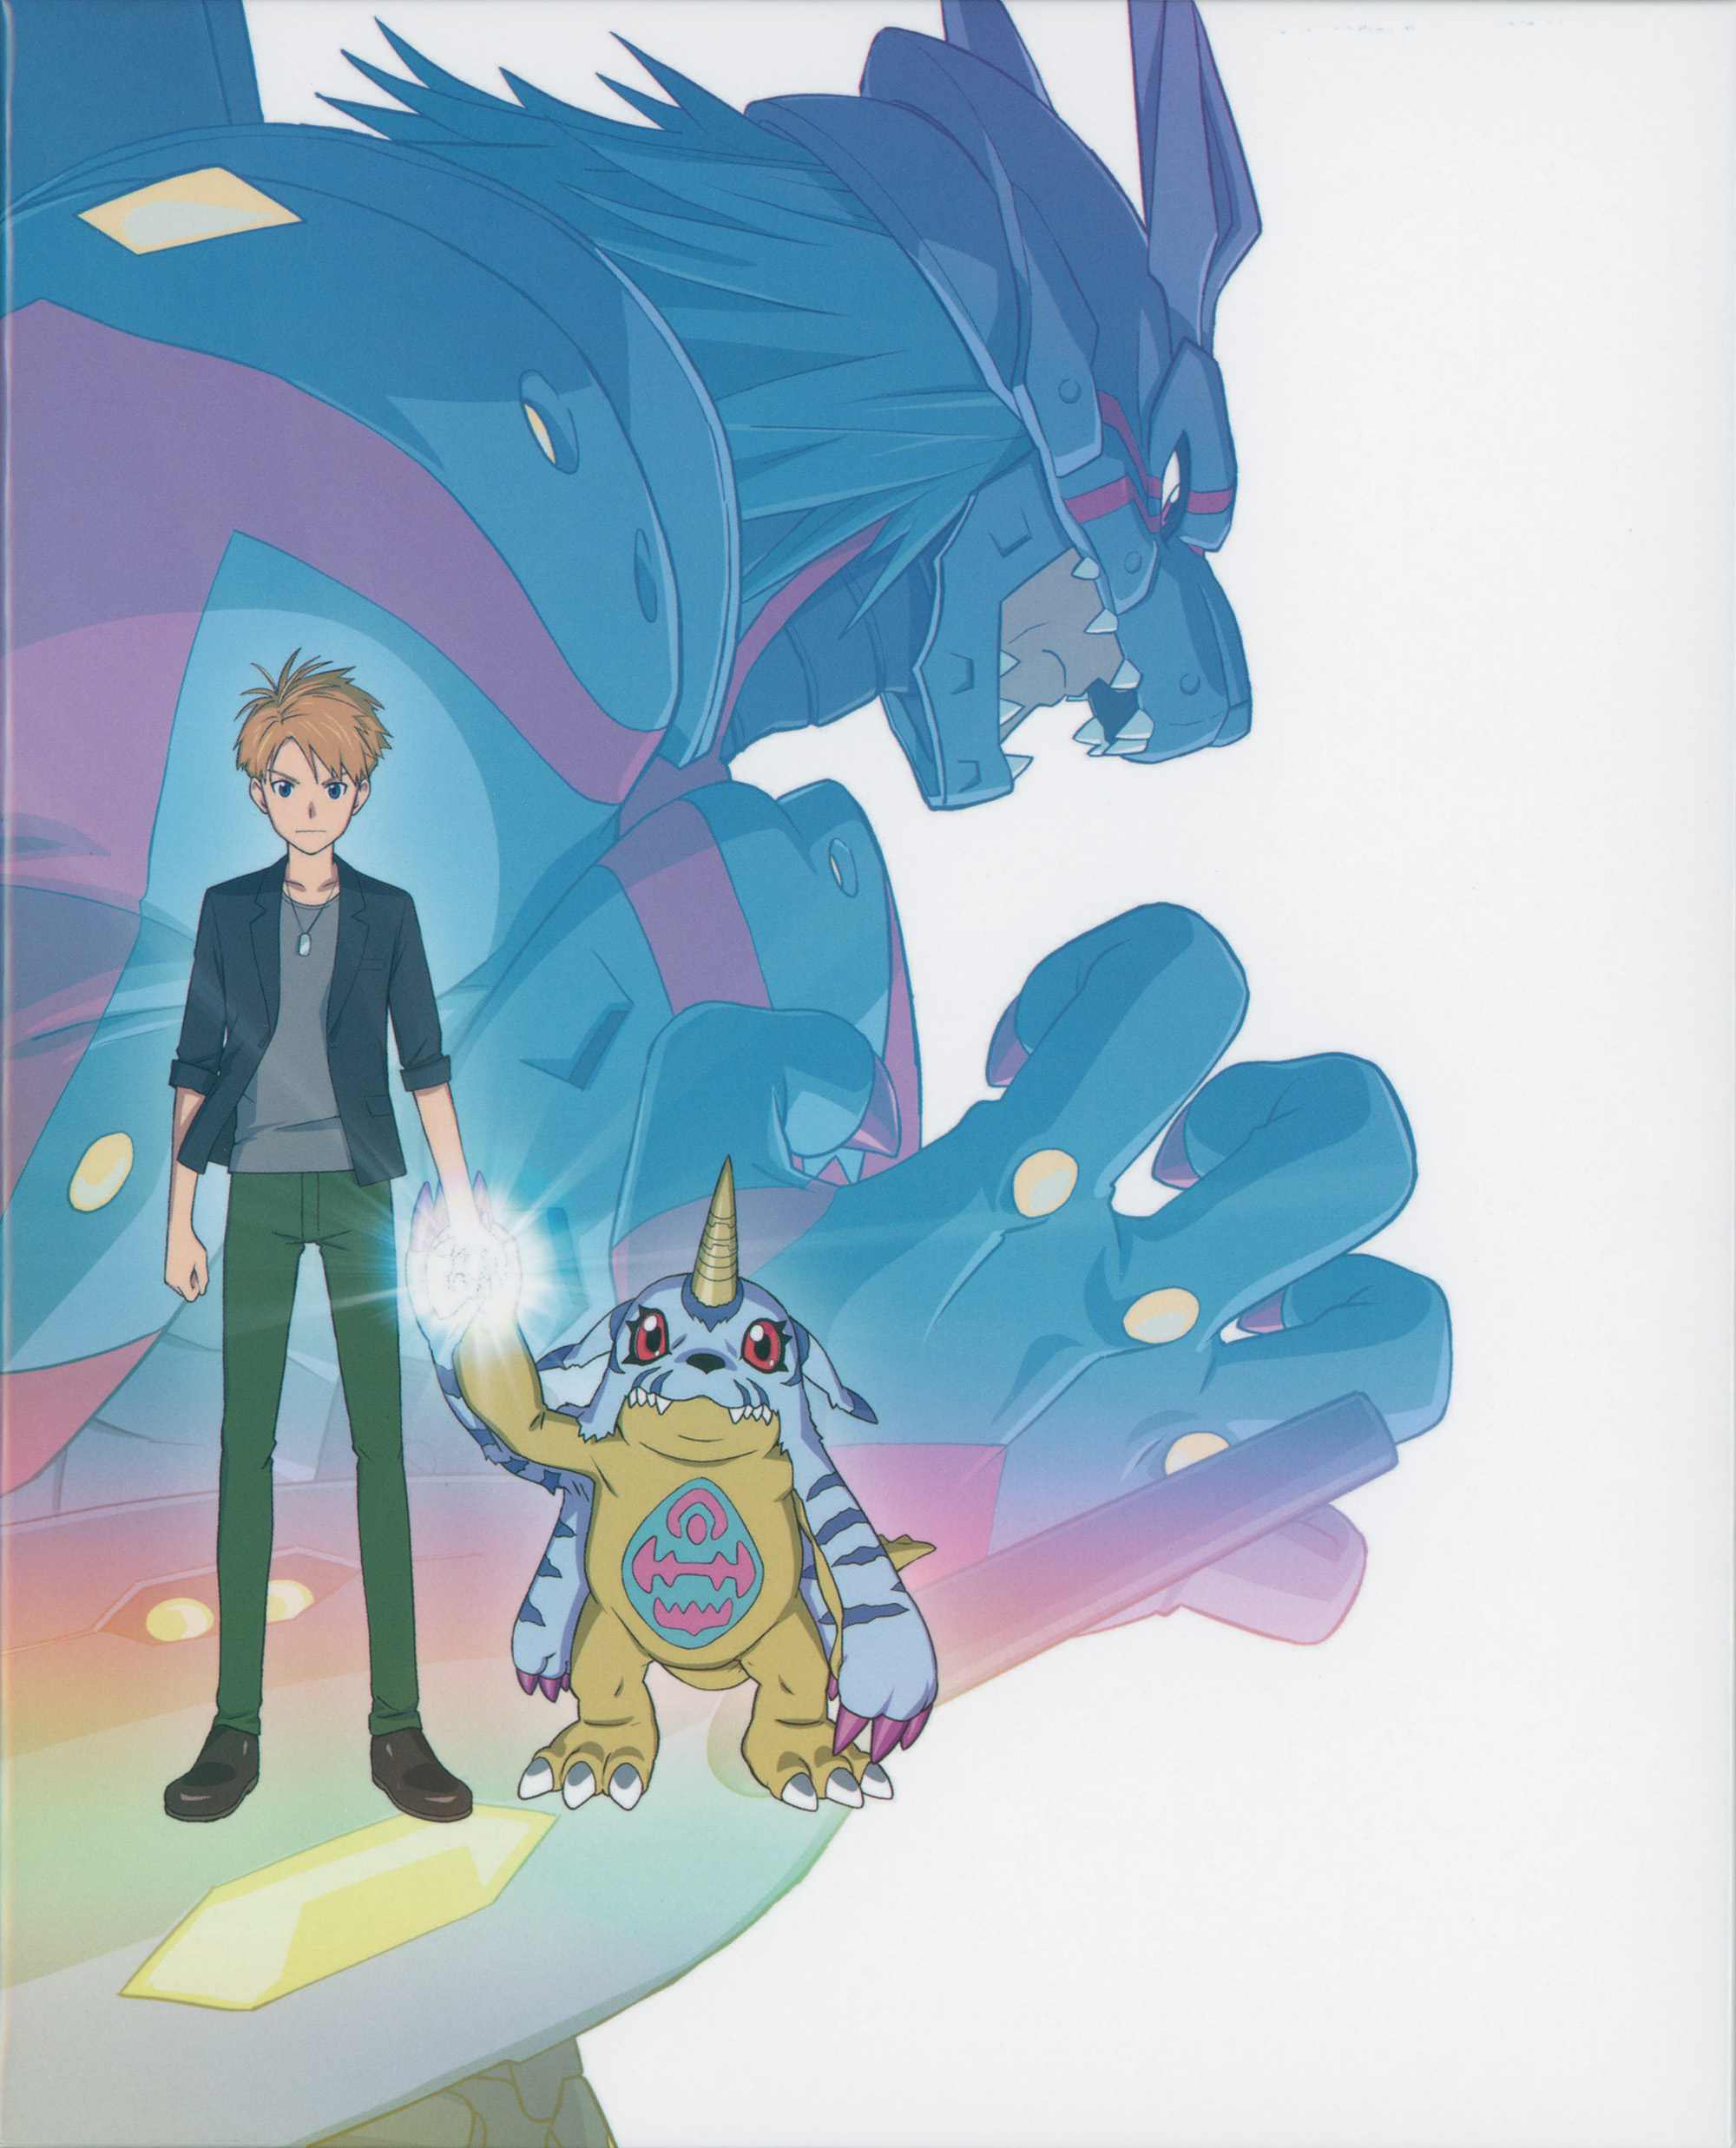 Digimon Adventure: Last Evolution Kizuna (2020) Exclusive Clip - GameSpot